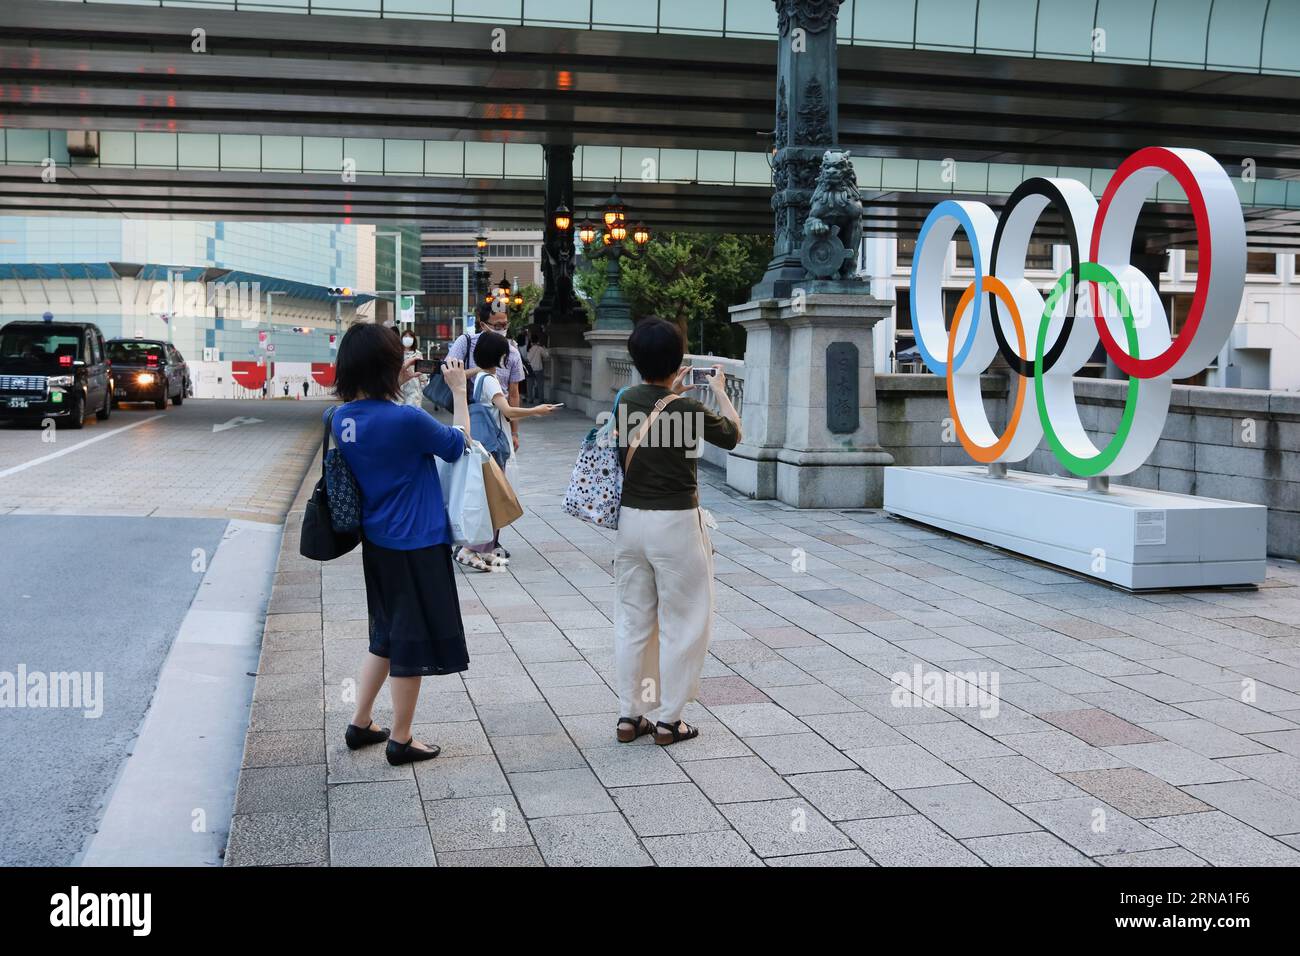 TOKIO, JAPÓN - 28 de julio de 2021: La gente toma fotos de un monumento del Anillo Olímpico a última hora de la tarde en el puente Nihonbashi. Foto de stock